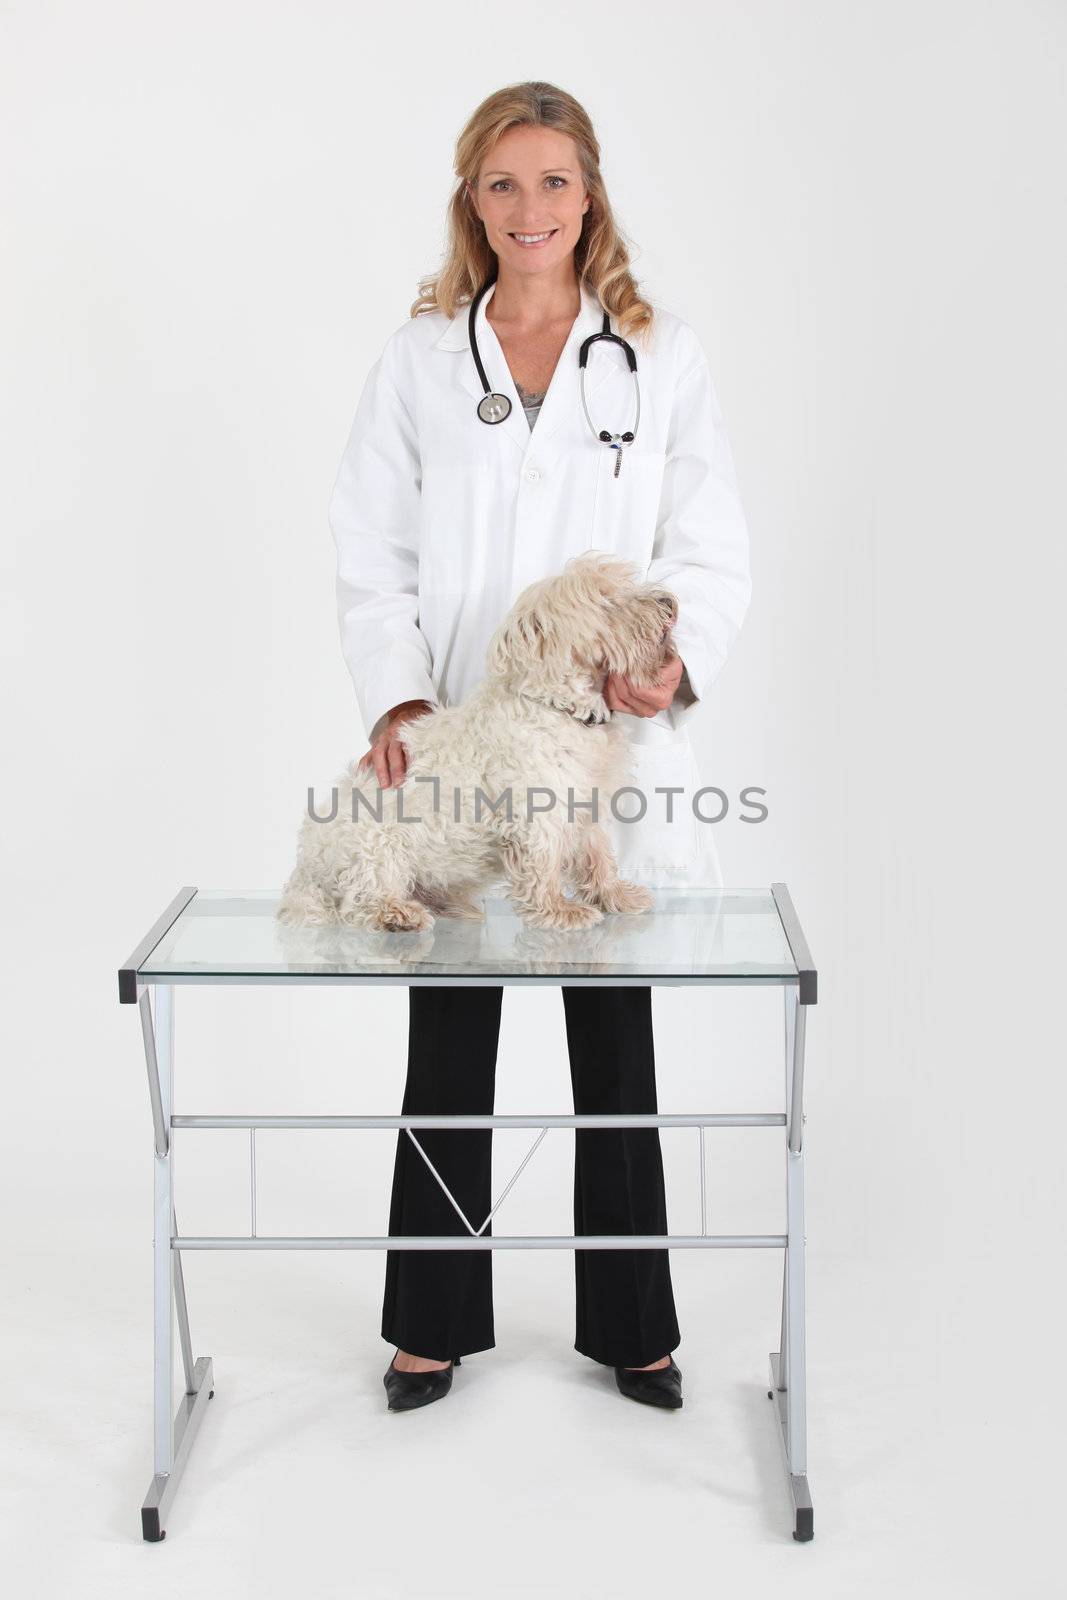 Female vet treating dog by phovoir